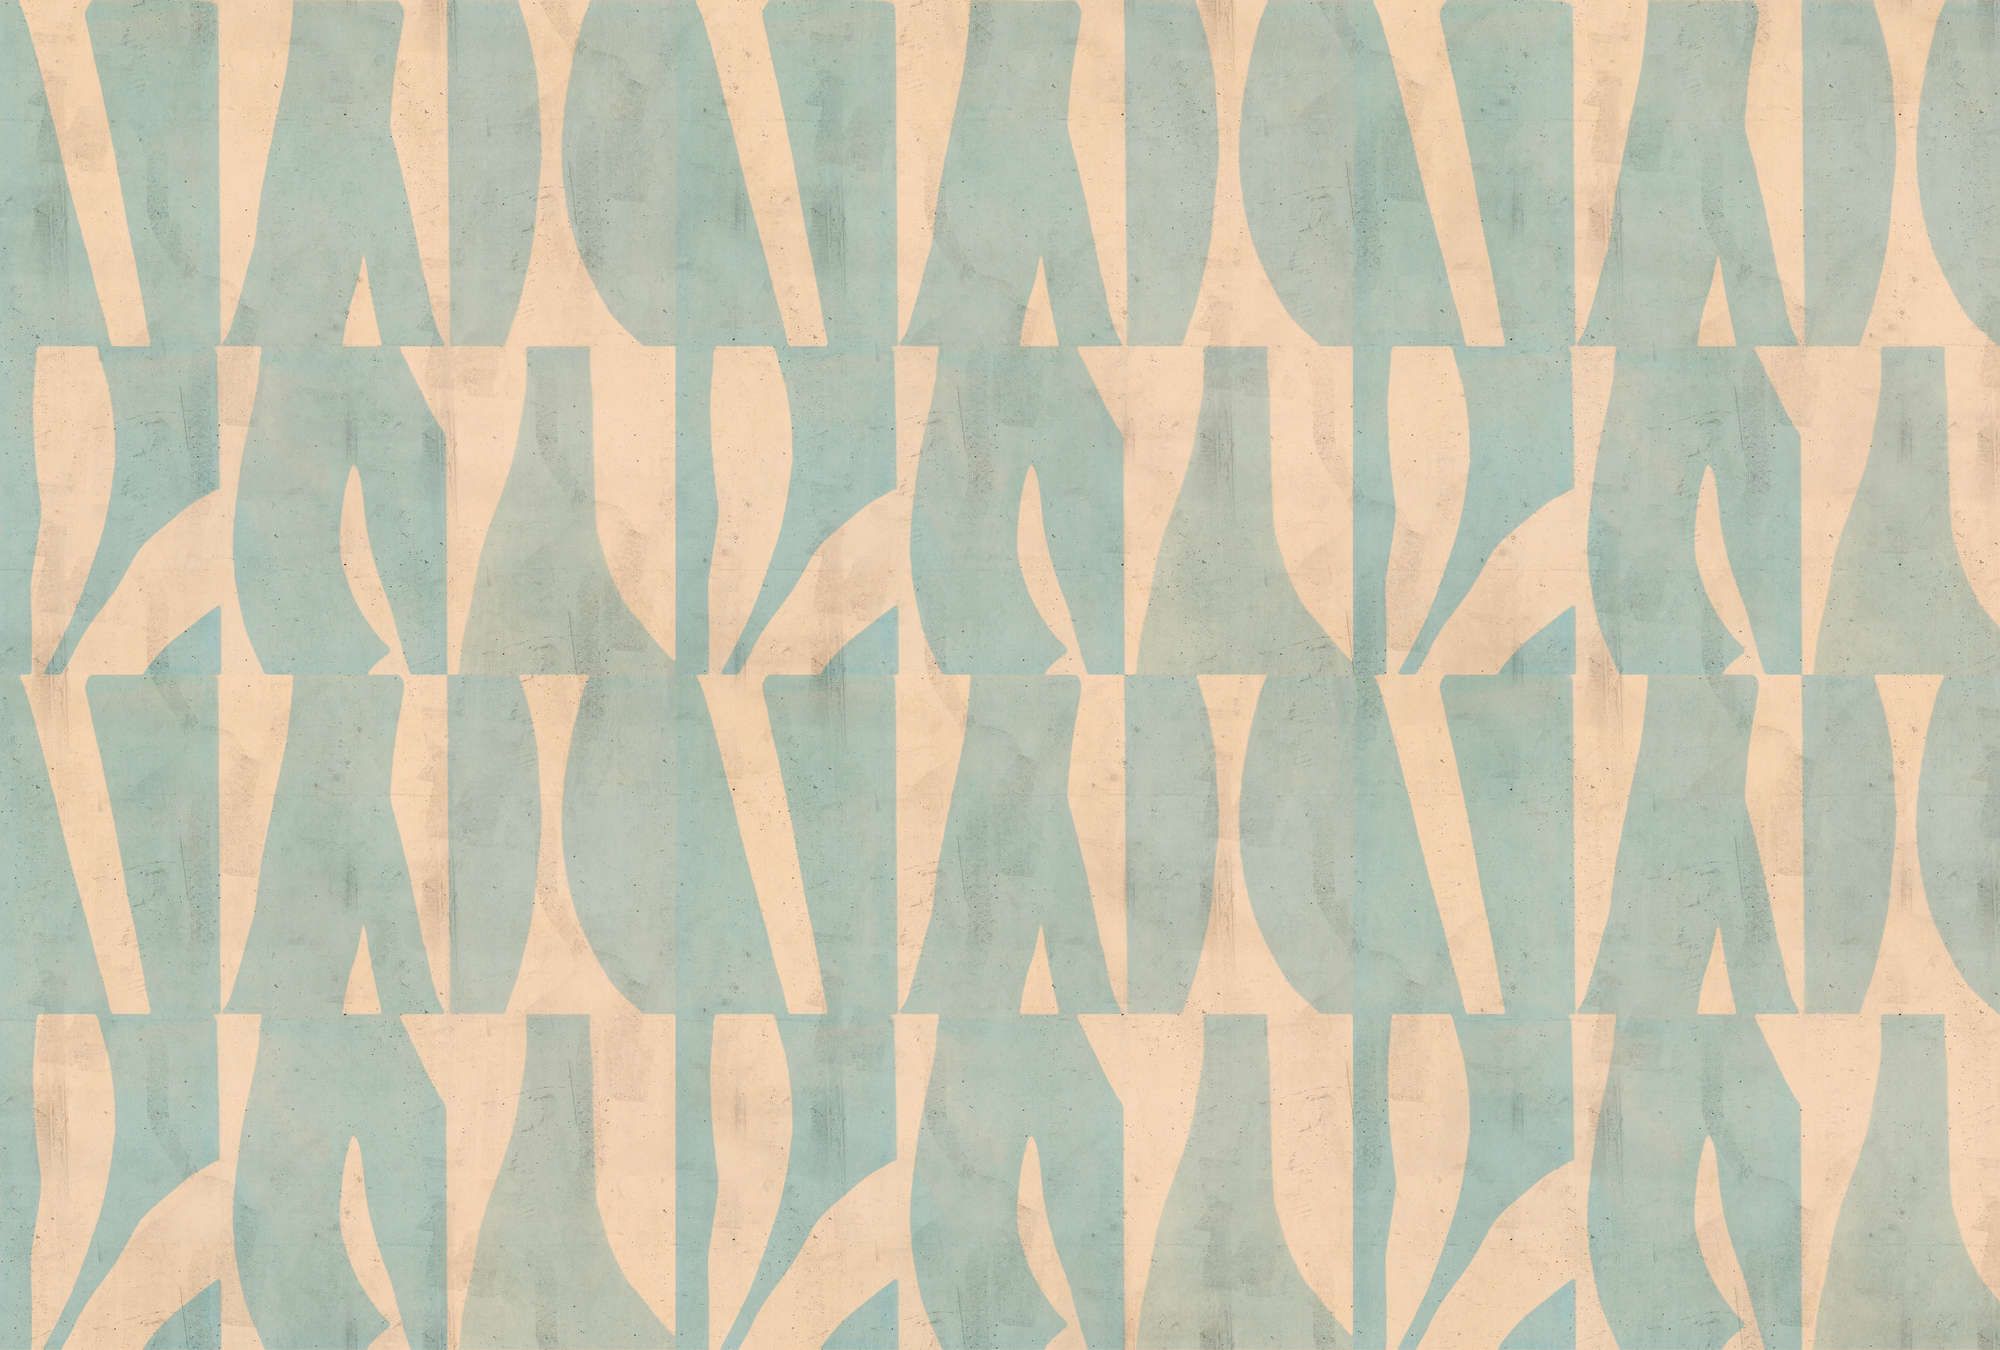             Fototapete »laila« - Grafisches Muster auf Betonputz-Struktur – Beige, Mintgrün | Leicht strukturiertes Vlies
        